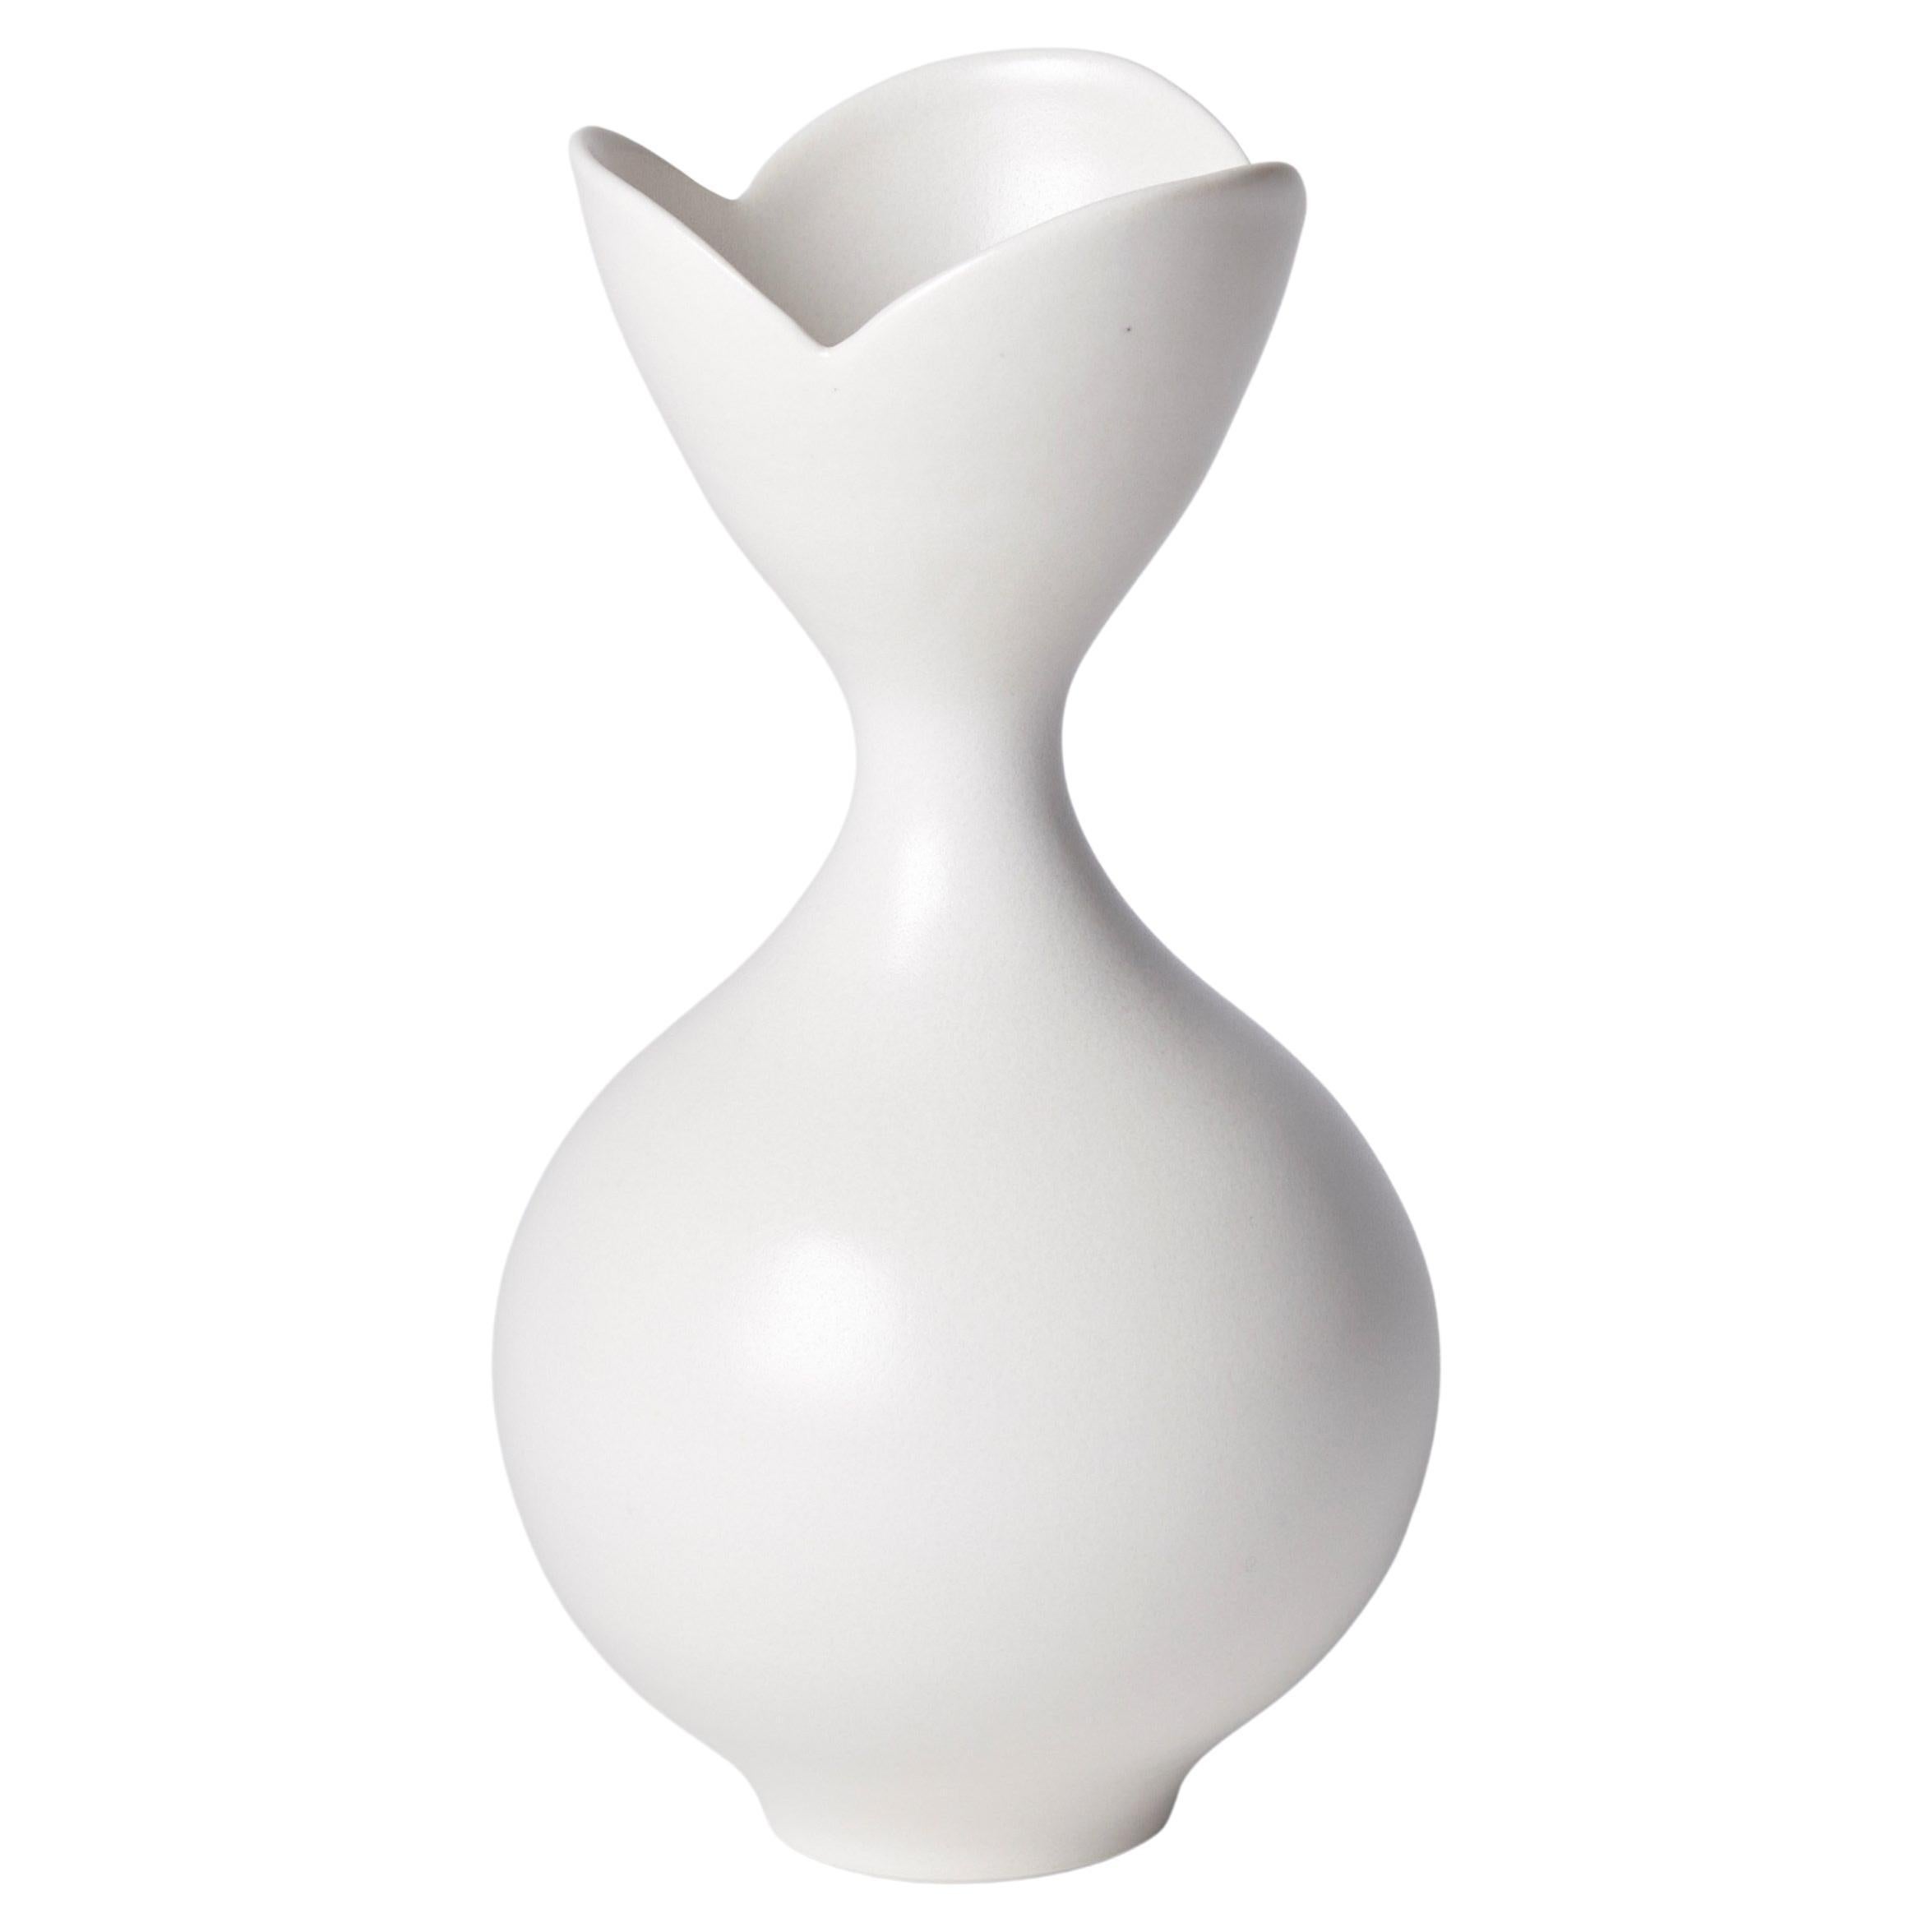 Vase with Tri Lobed Rim I, a Unique White Porcelain Vase by Vivienne Foley